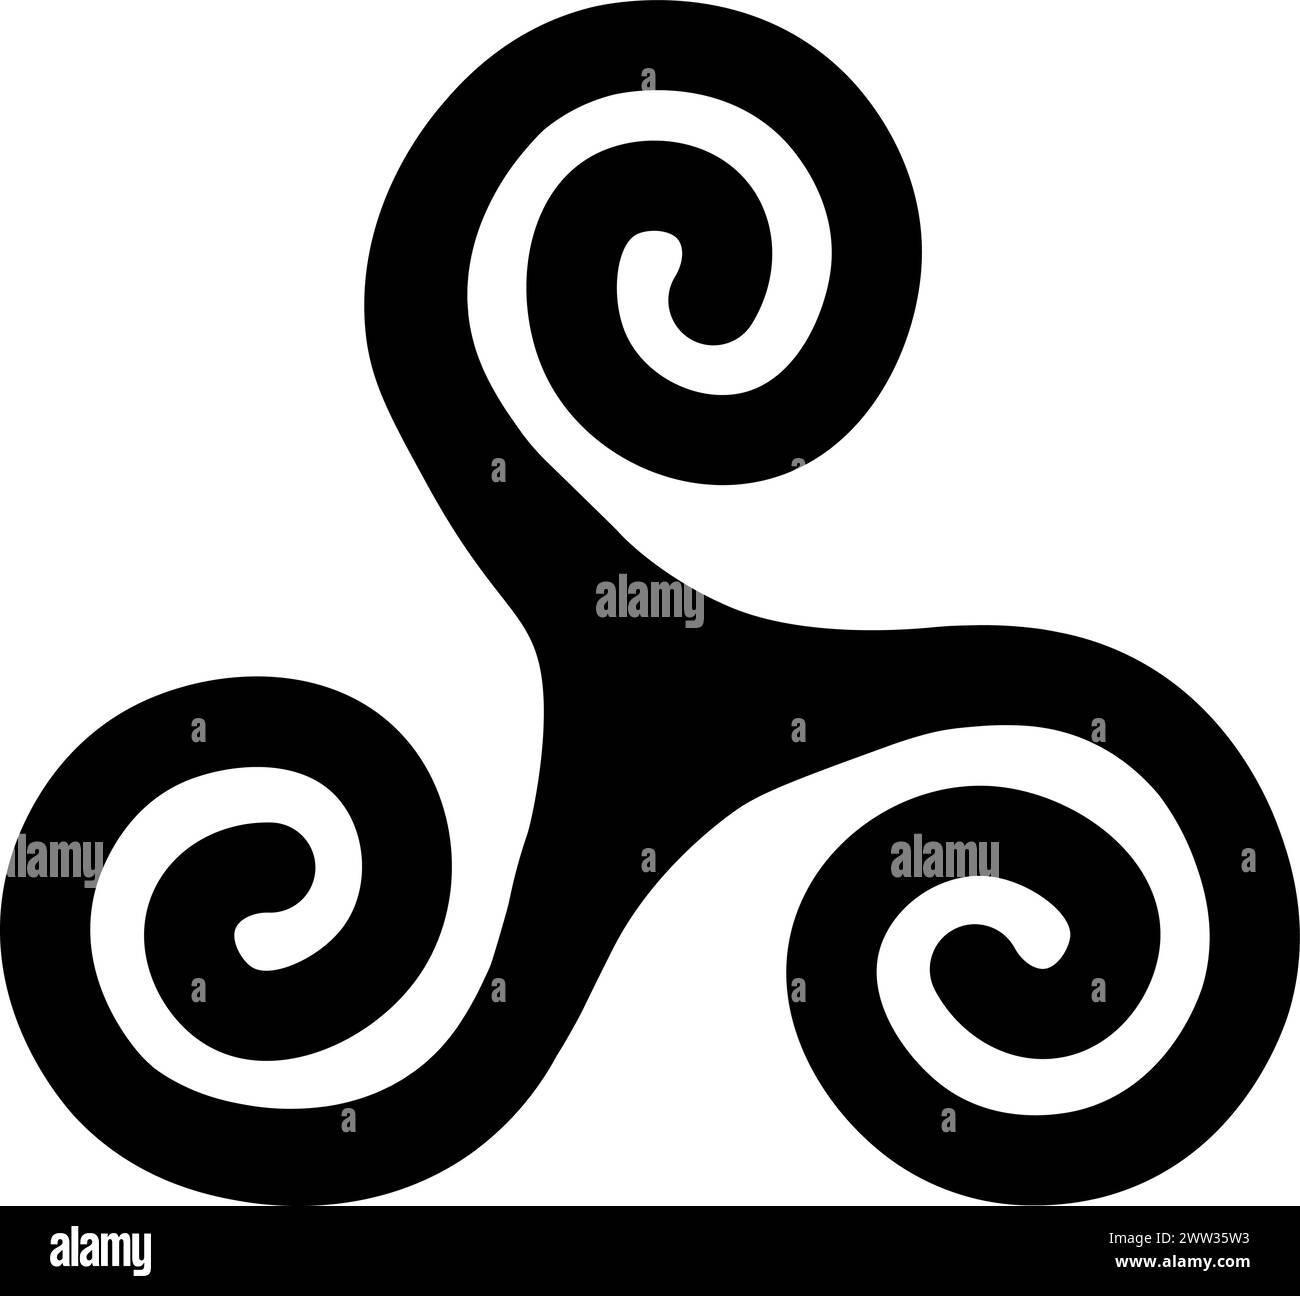 Keltisches Spiralmystisches religiöses Symbol. Spirituelles Triskele-Zeichen der traditionellen Kultur der Anbetung und Verehrung. Einfache Schwarz-weiß-Vektor-isola Stock Vektor